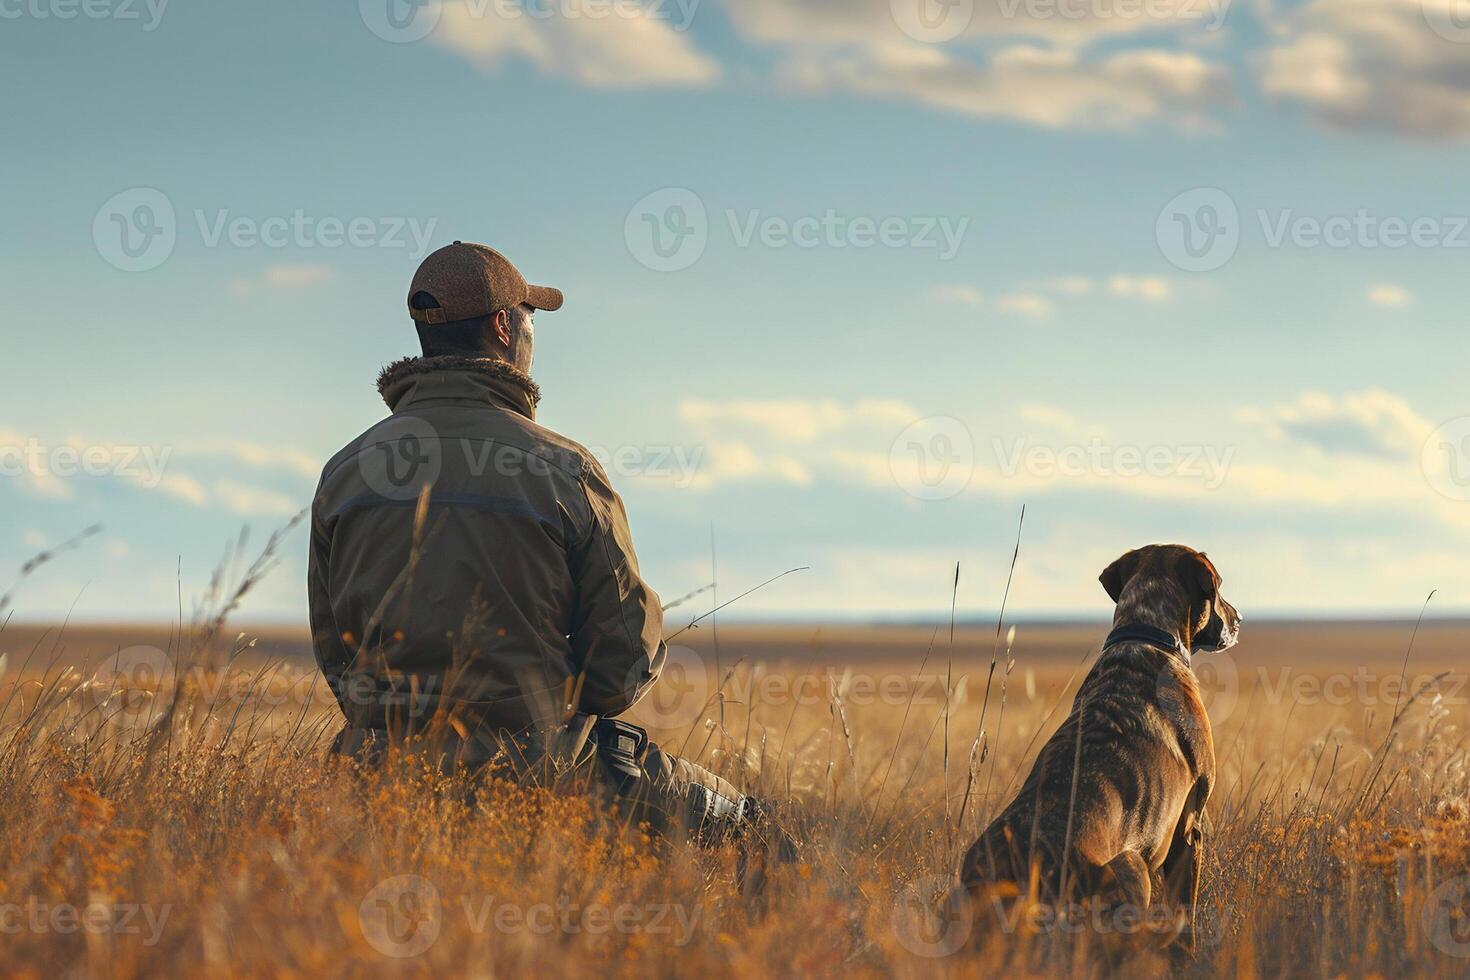 cazador con un entrenado caza perro a su lado, ambos alerta y exploración el horizonte en un herboso campo foto